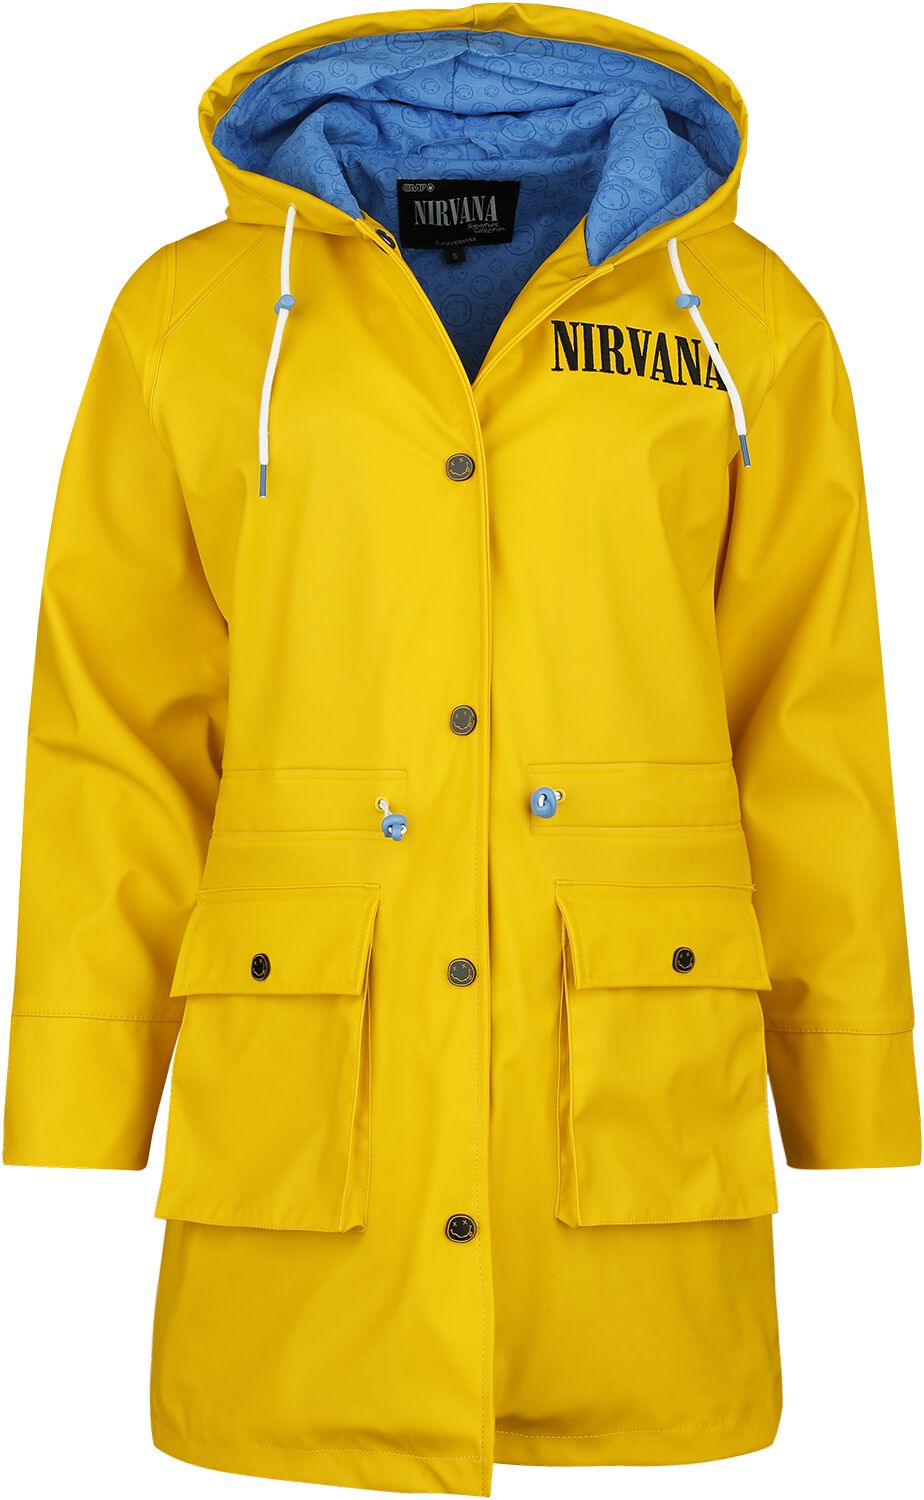 Nirvana Regenmantel - EMP Signature Collection - S bis XXL - für Damen - Größe L - gelb  - EMP exklusives Merchandise! von Nirvana